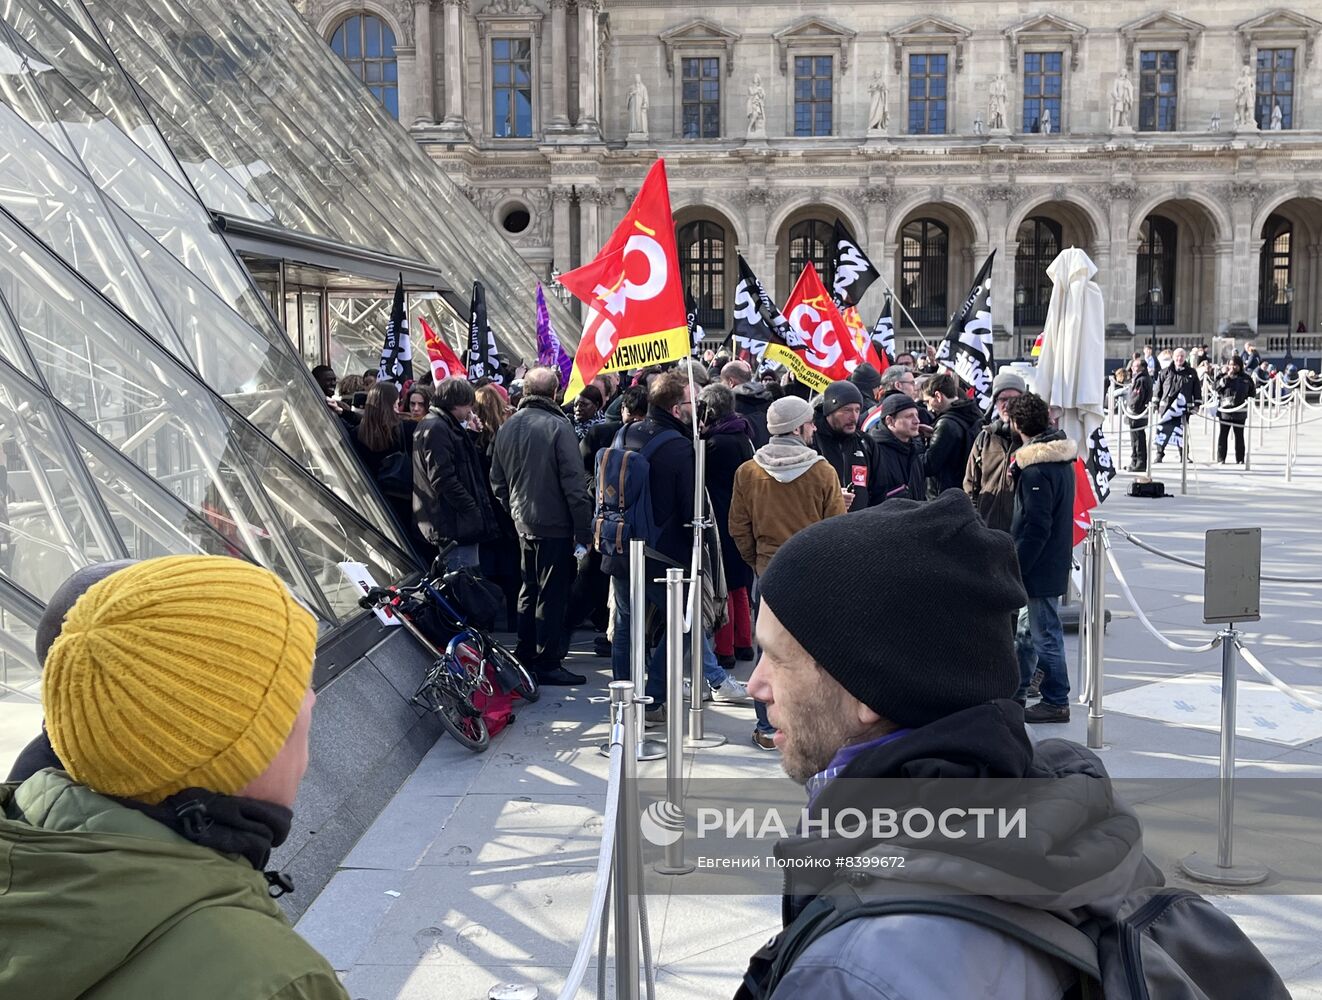 Сотрудники Лувра присоединились к забастовке против пенсионной реформы во Франции